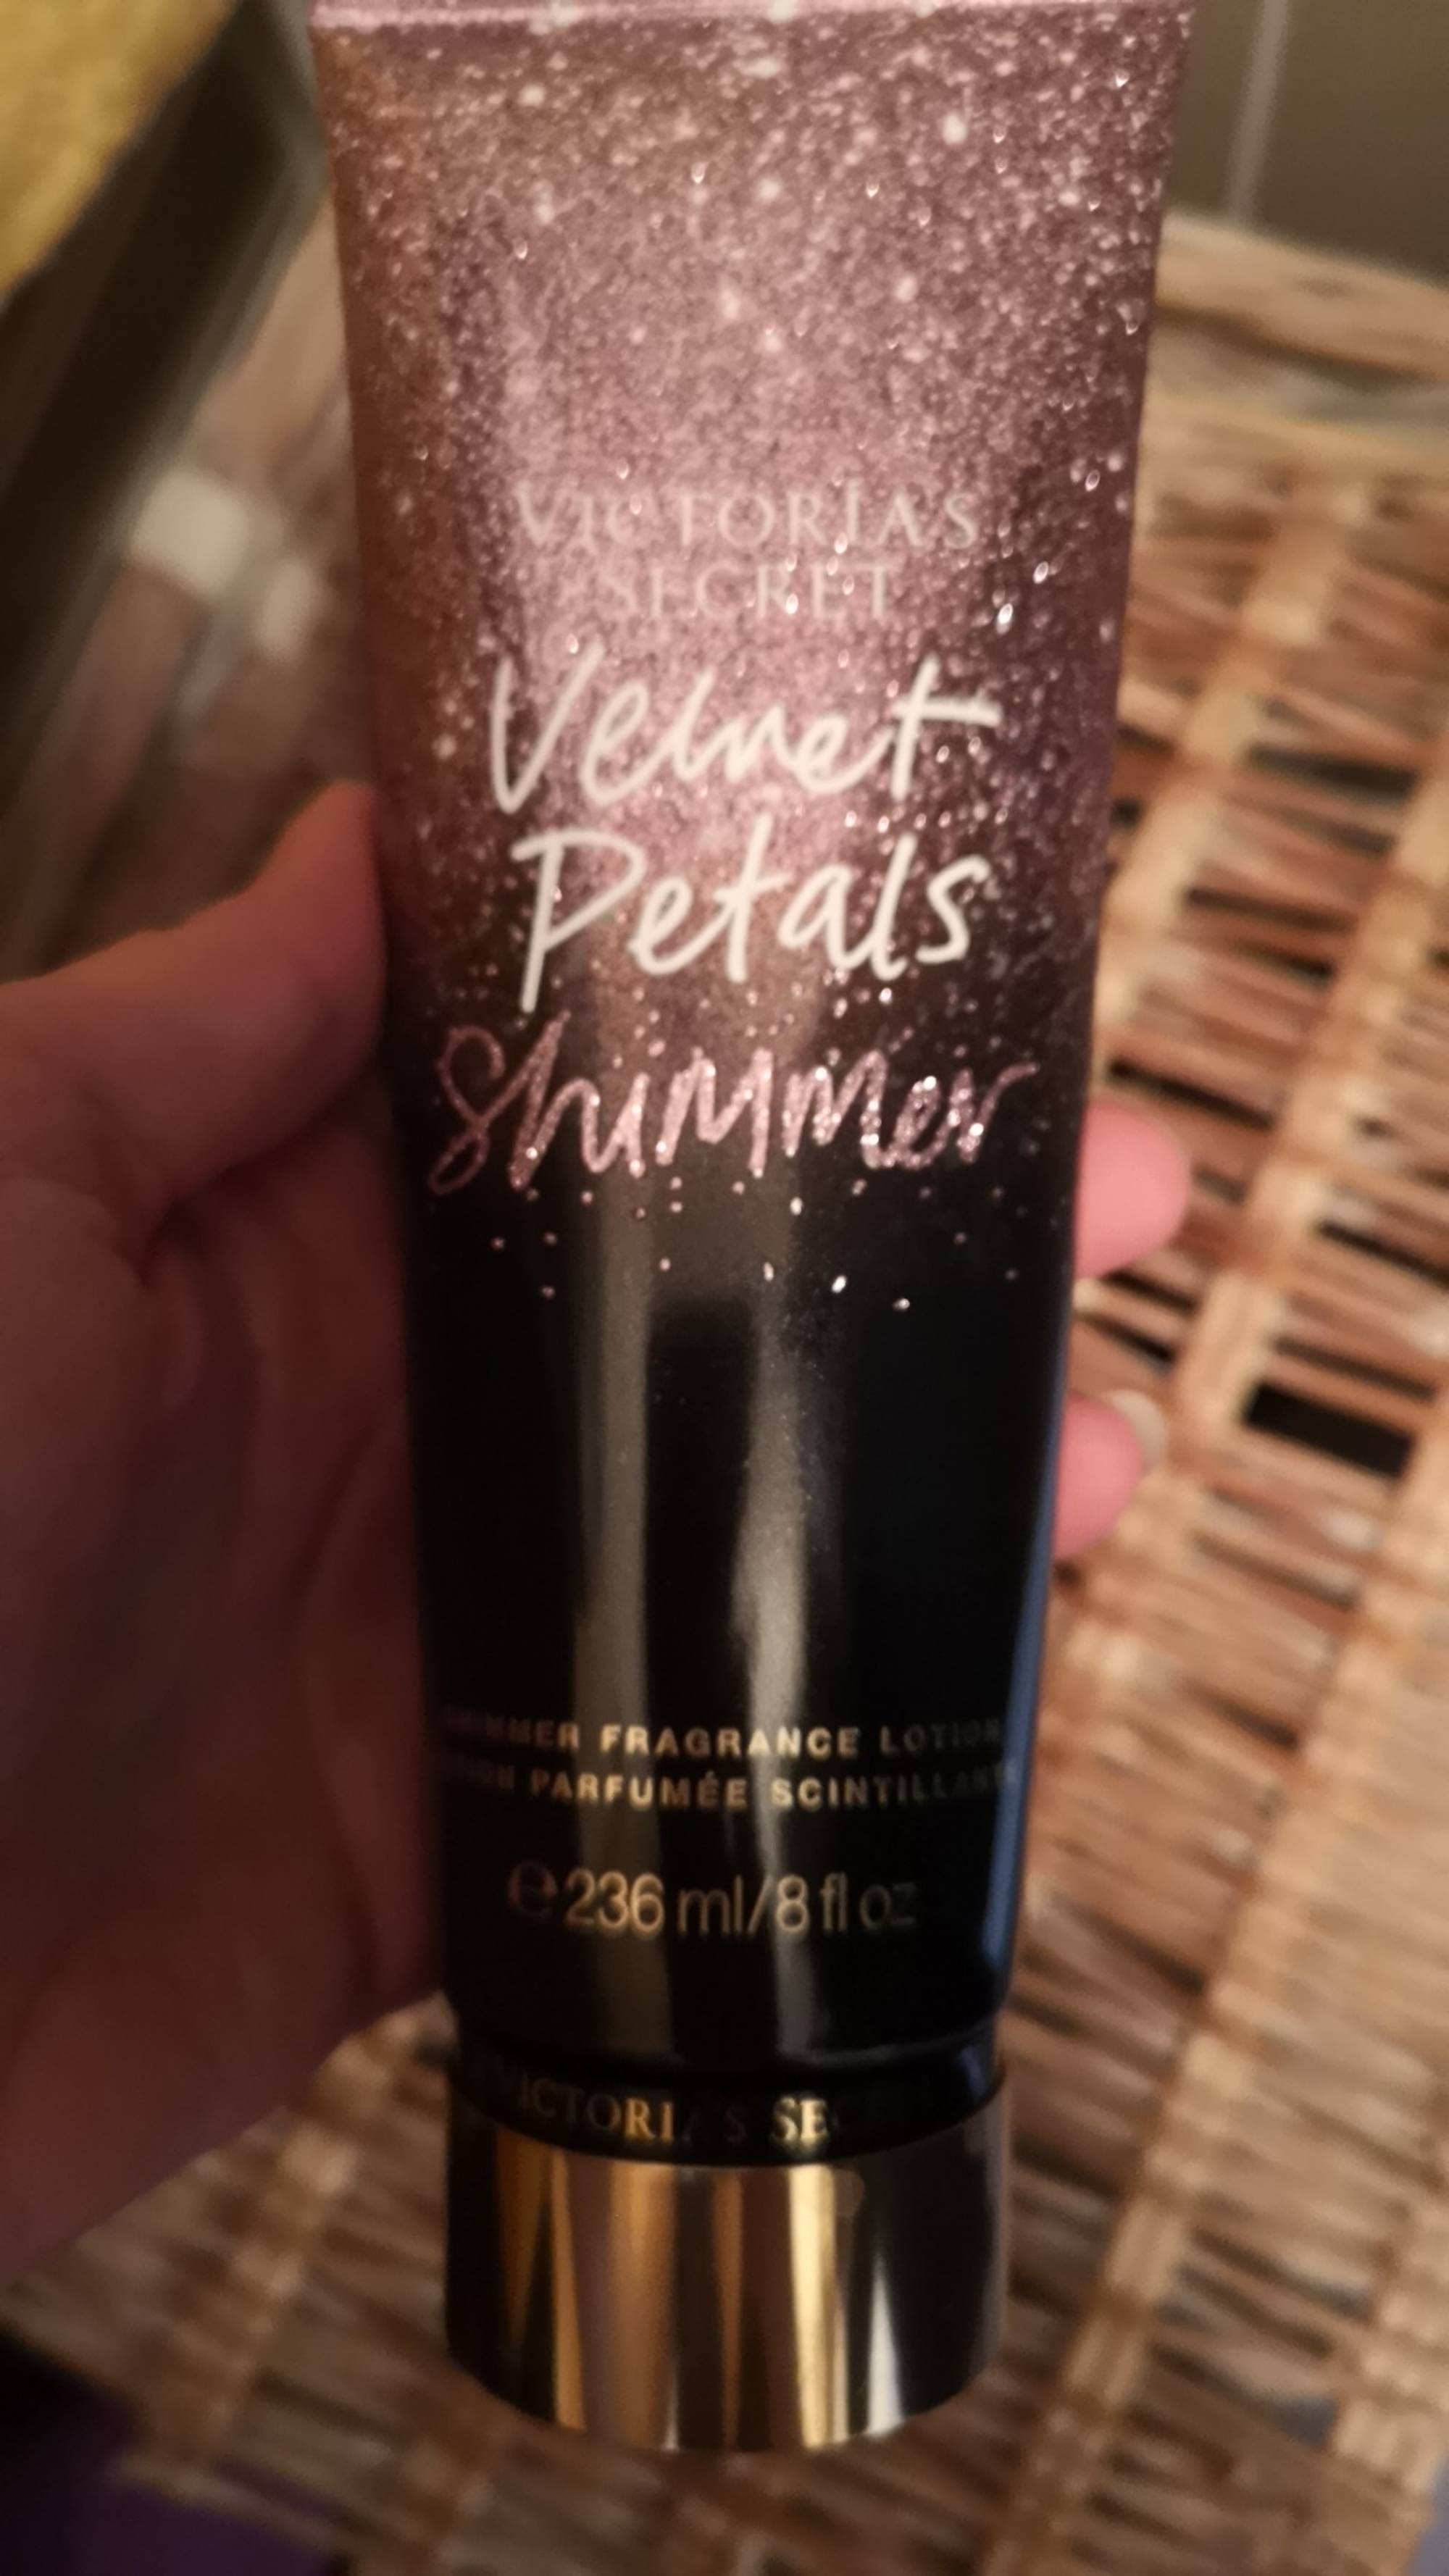 VICTORIA'S SECRET - Velvet Petals Shimmer - Lotion parfumée scintillante